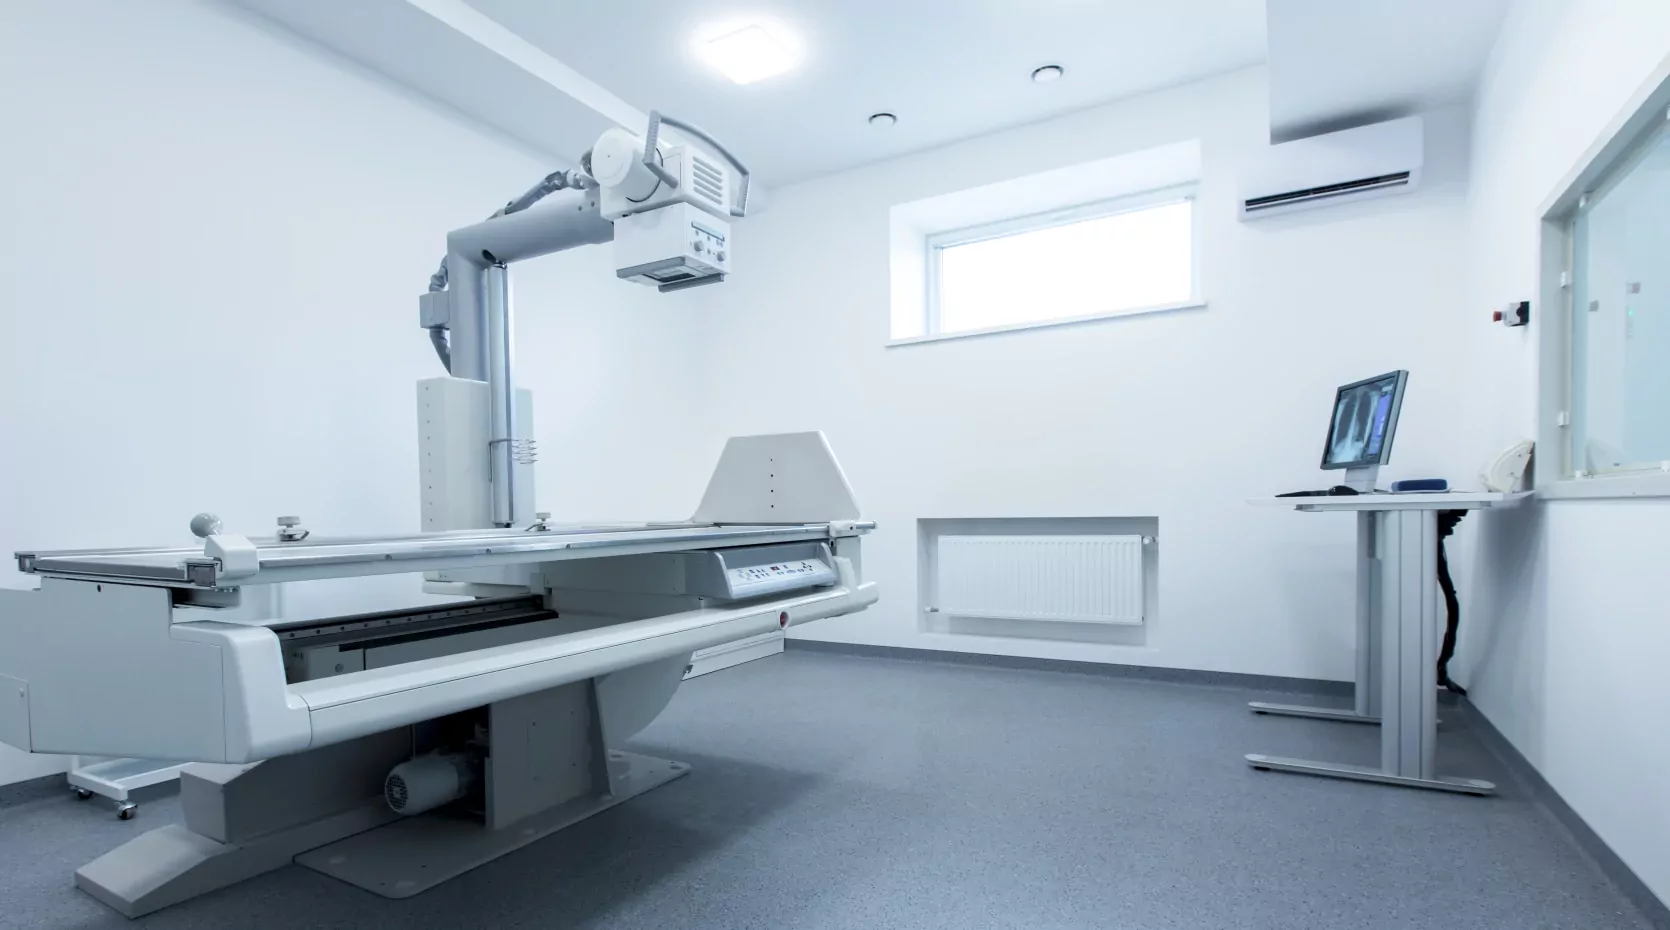 апарат для проведення рентгена шийно-грудного відділу в медичному центрі ОН Клінік Харків